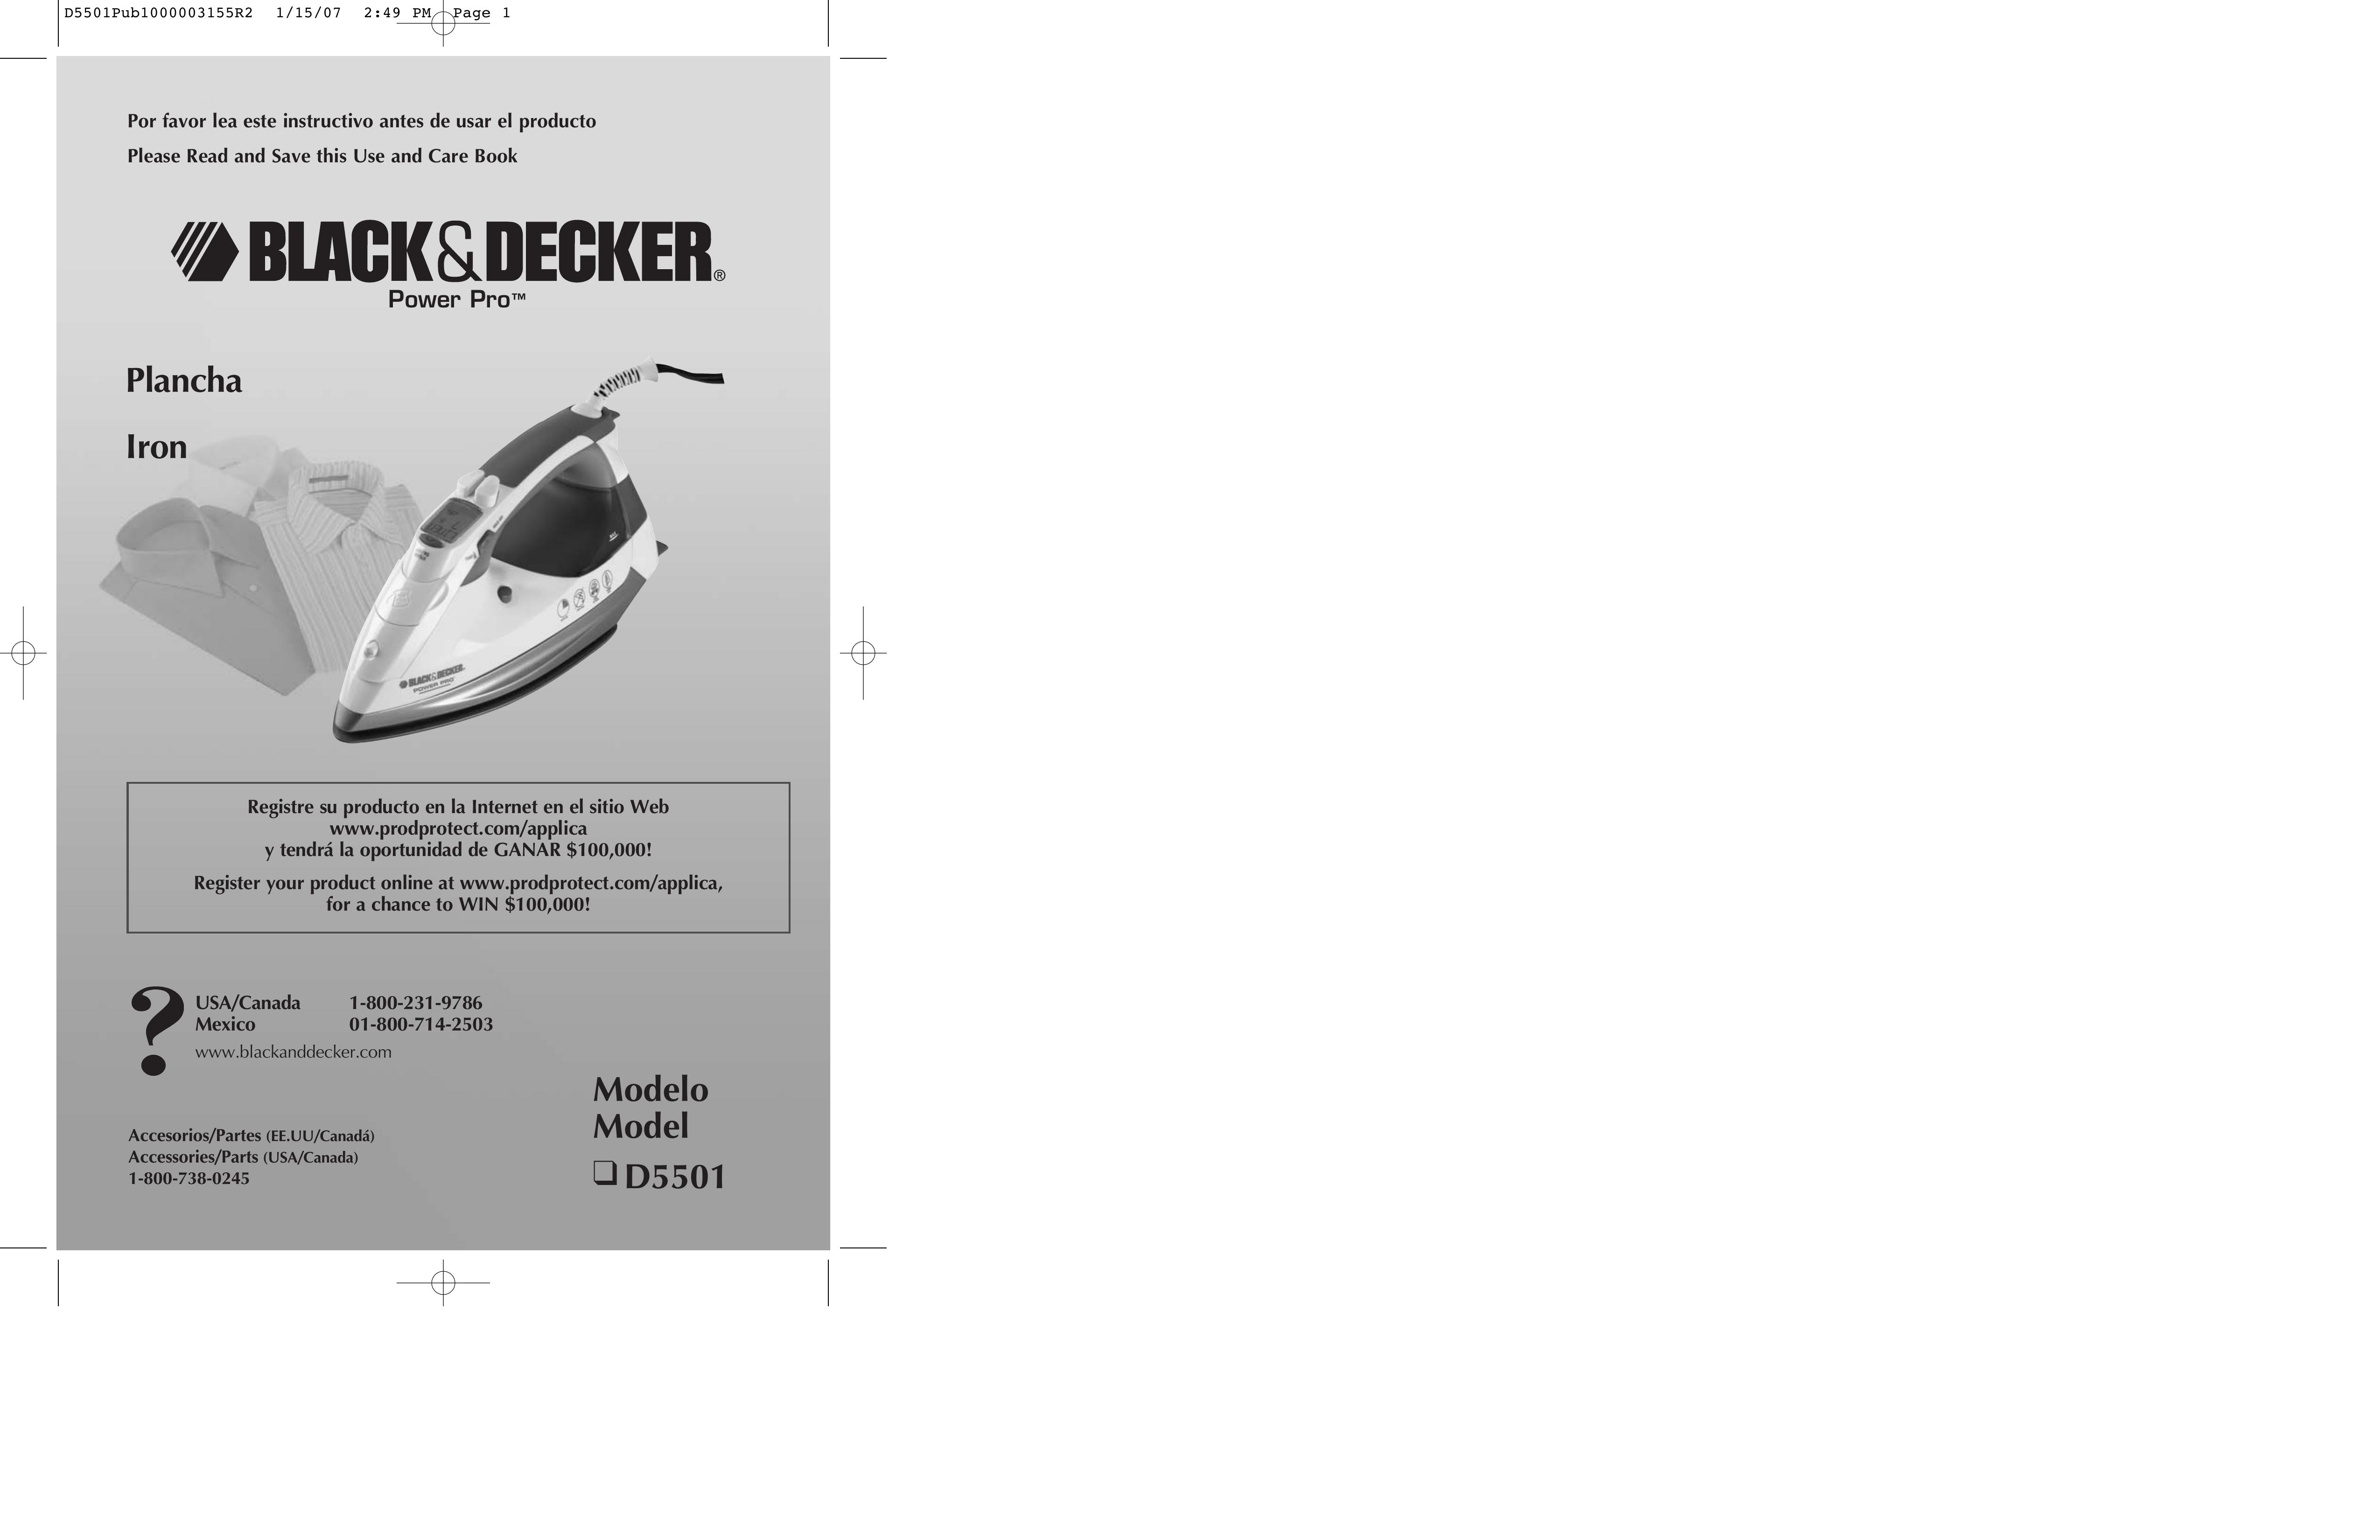 Black & Decker D5501 Iron User Manual